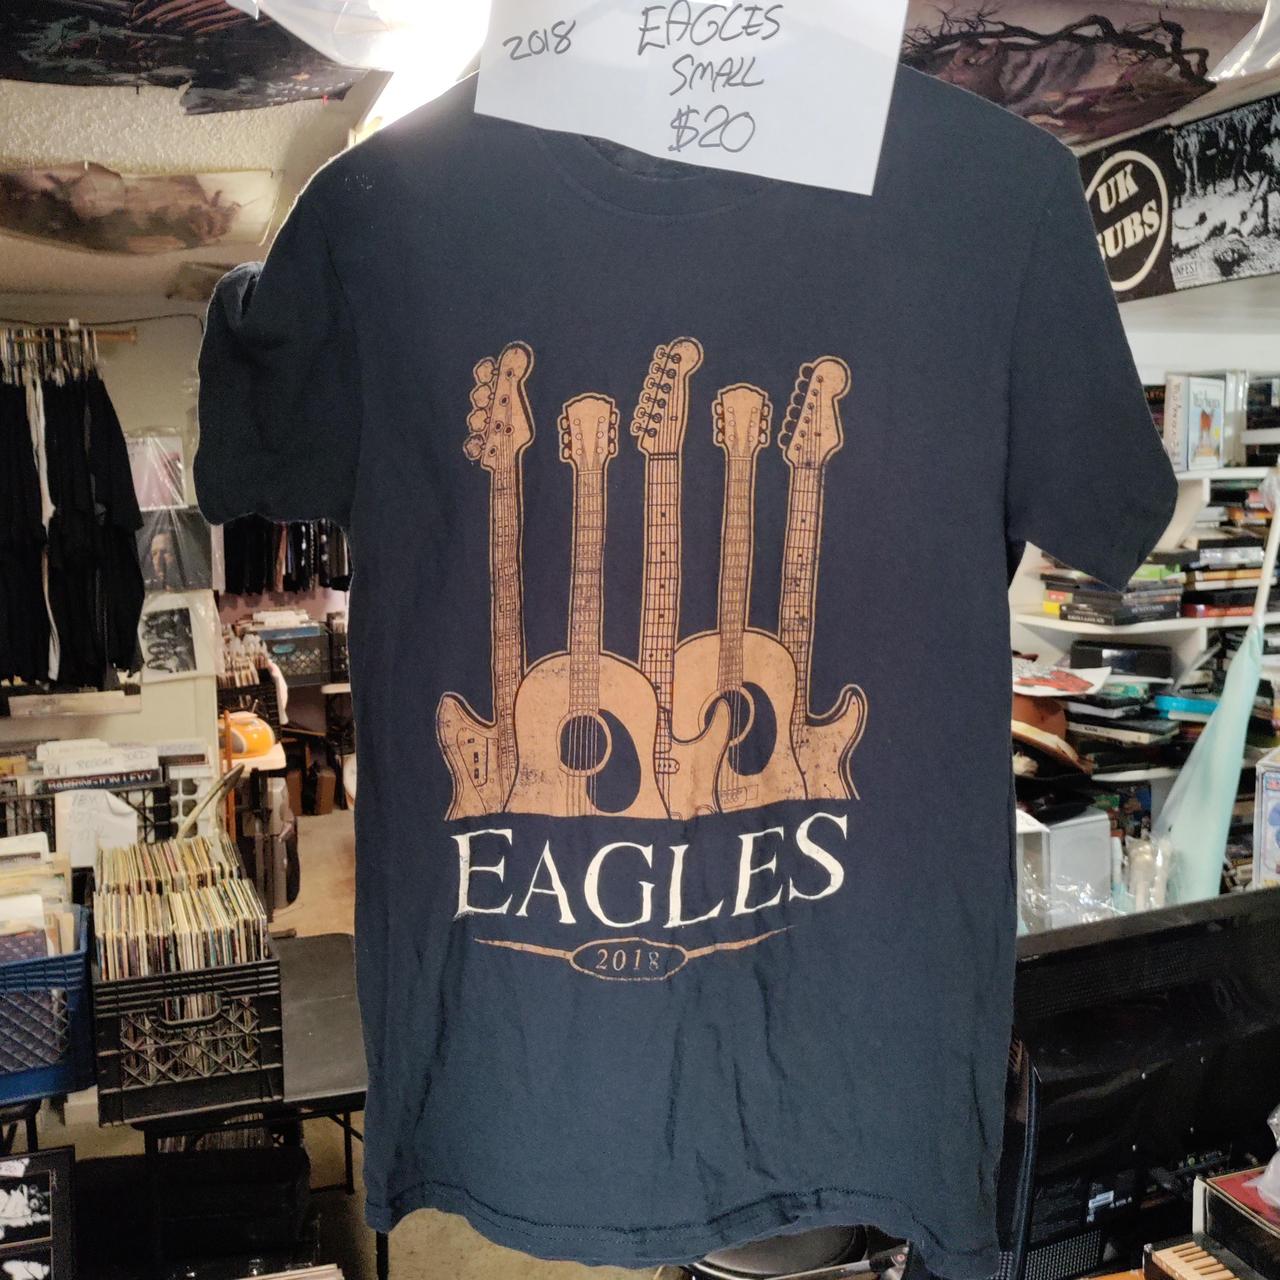 Eagles 2018 tour Tshirt.Small $20 16 1/2  - Depop